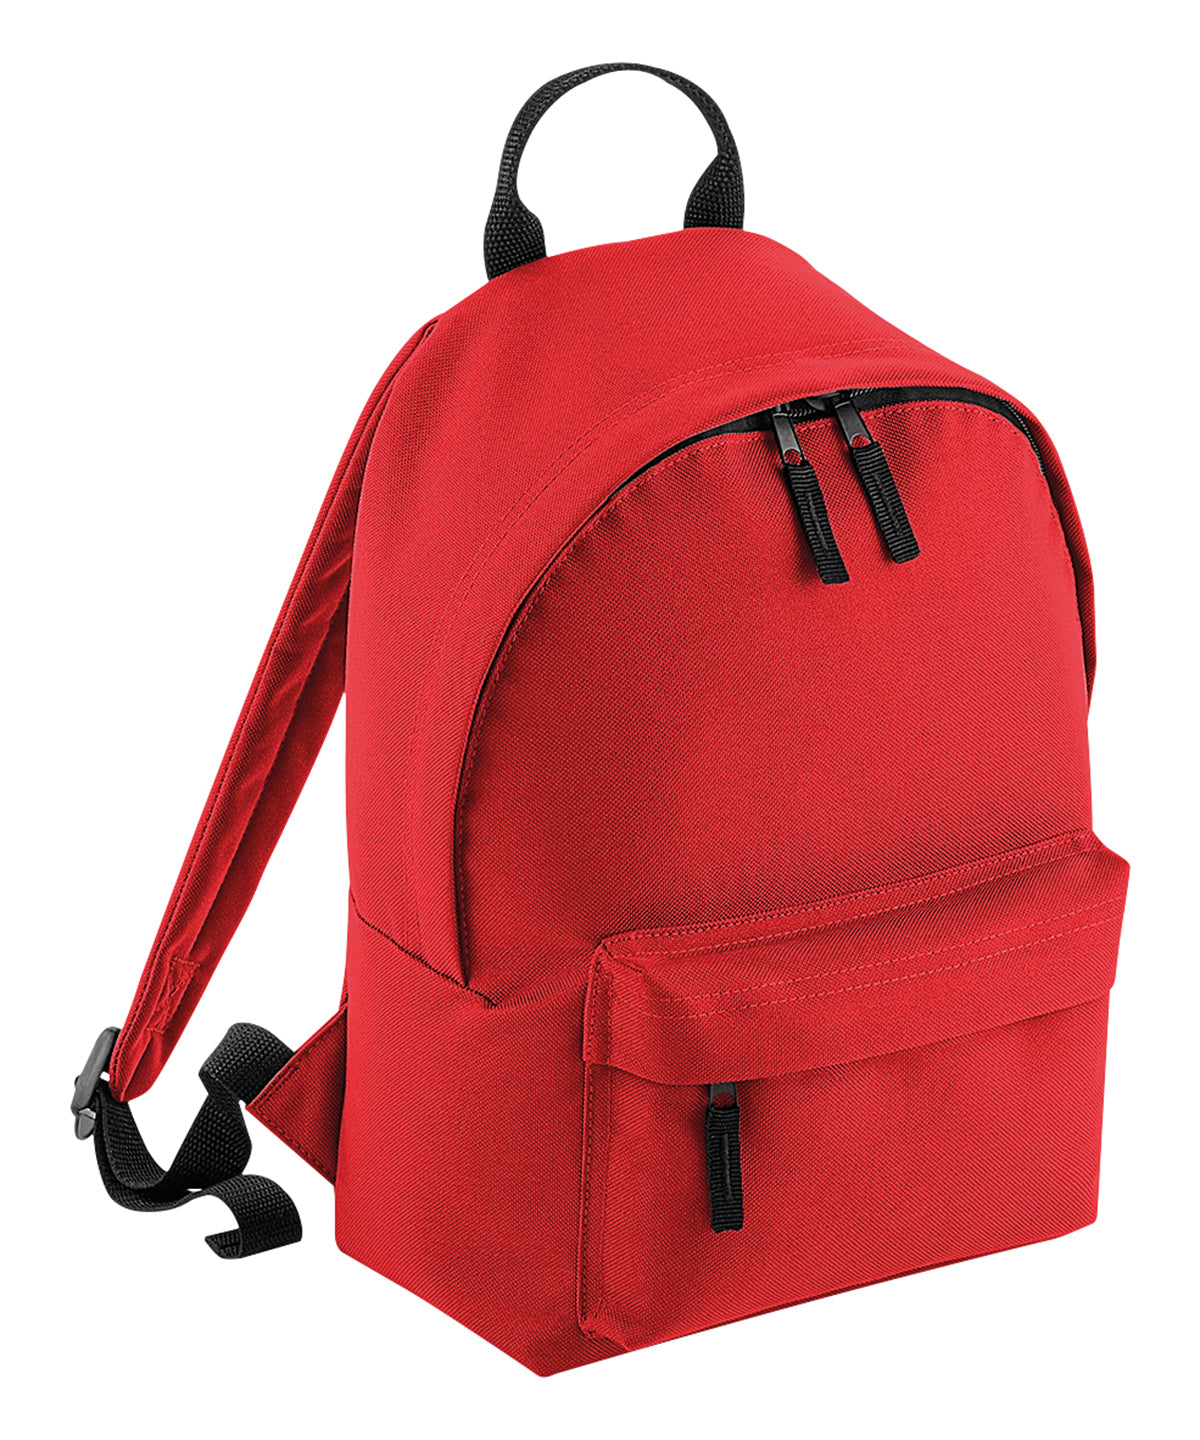 Töskur - Mini Fashion Backpack